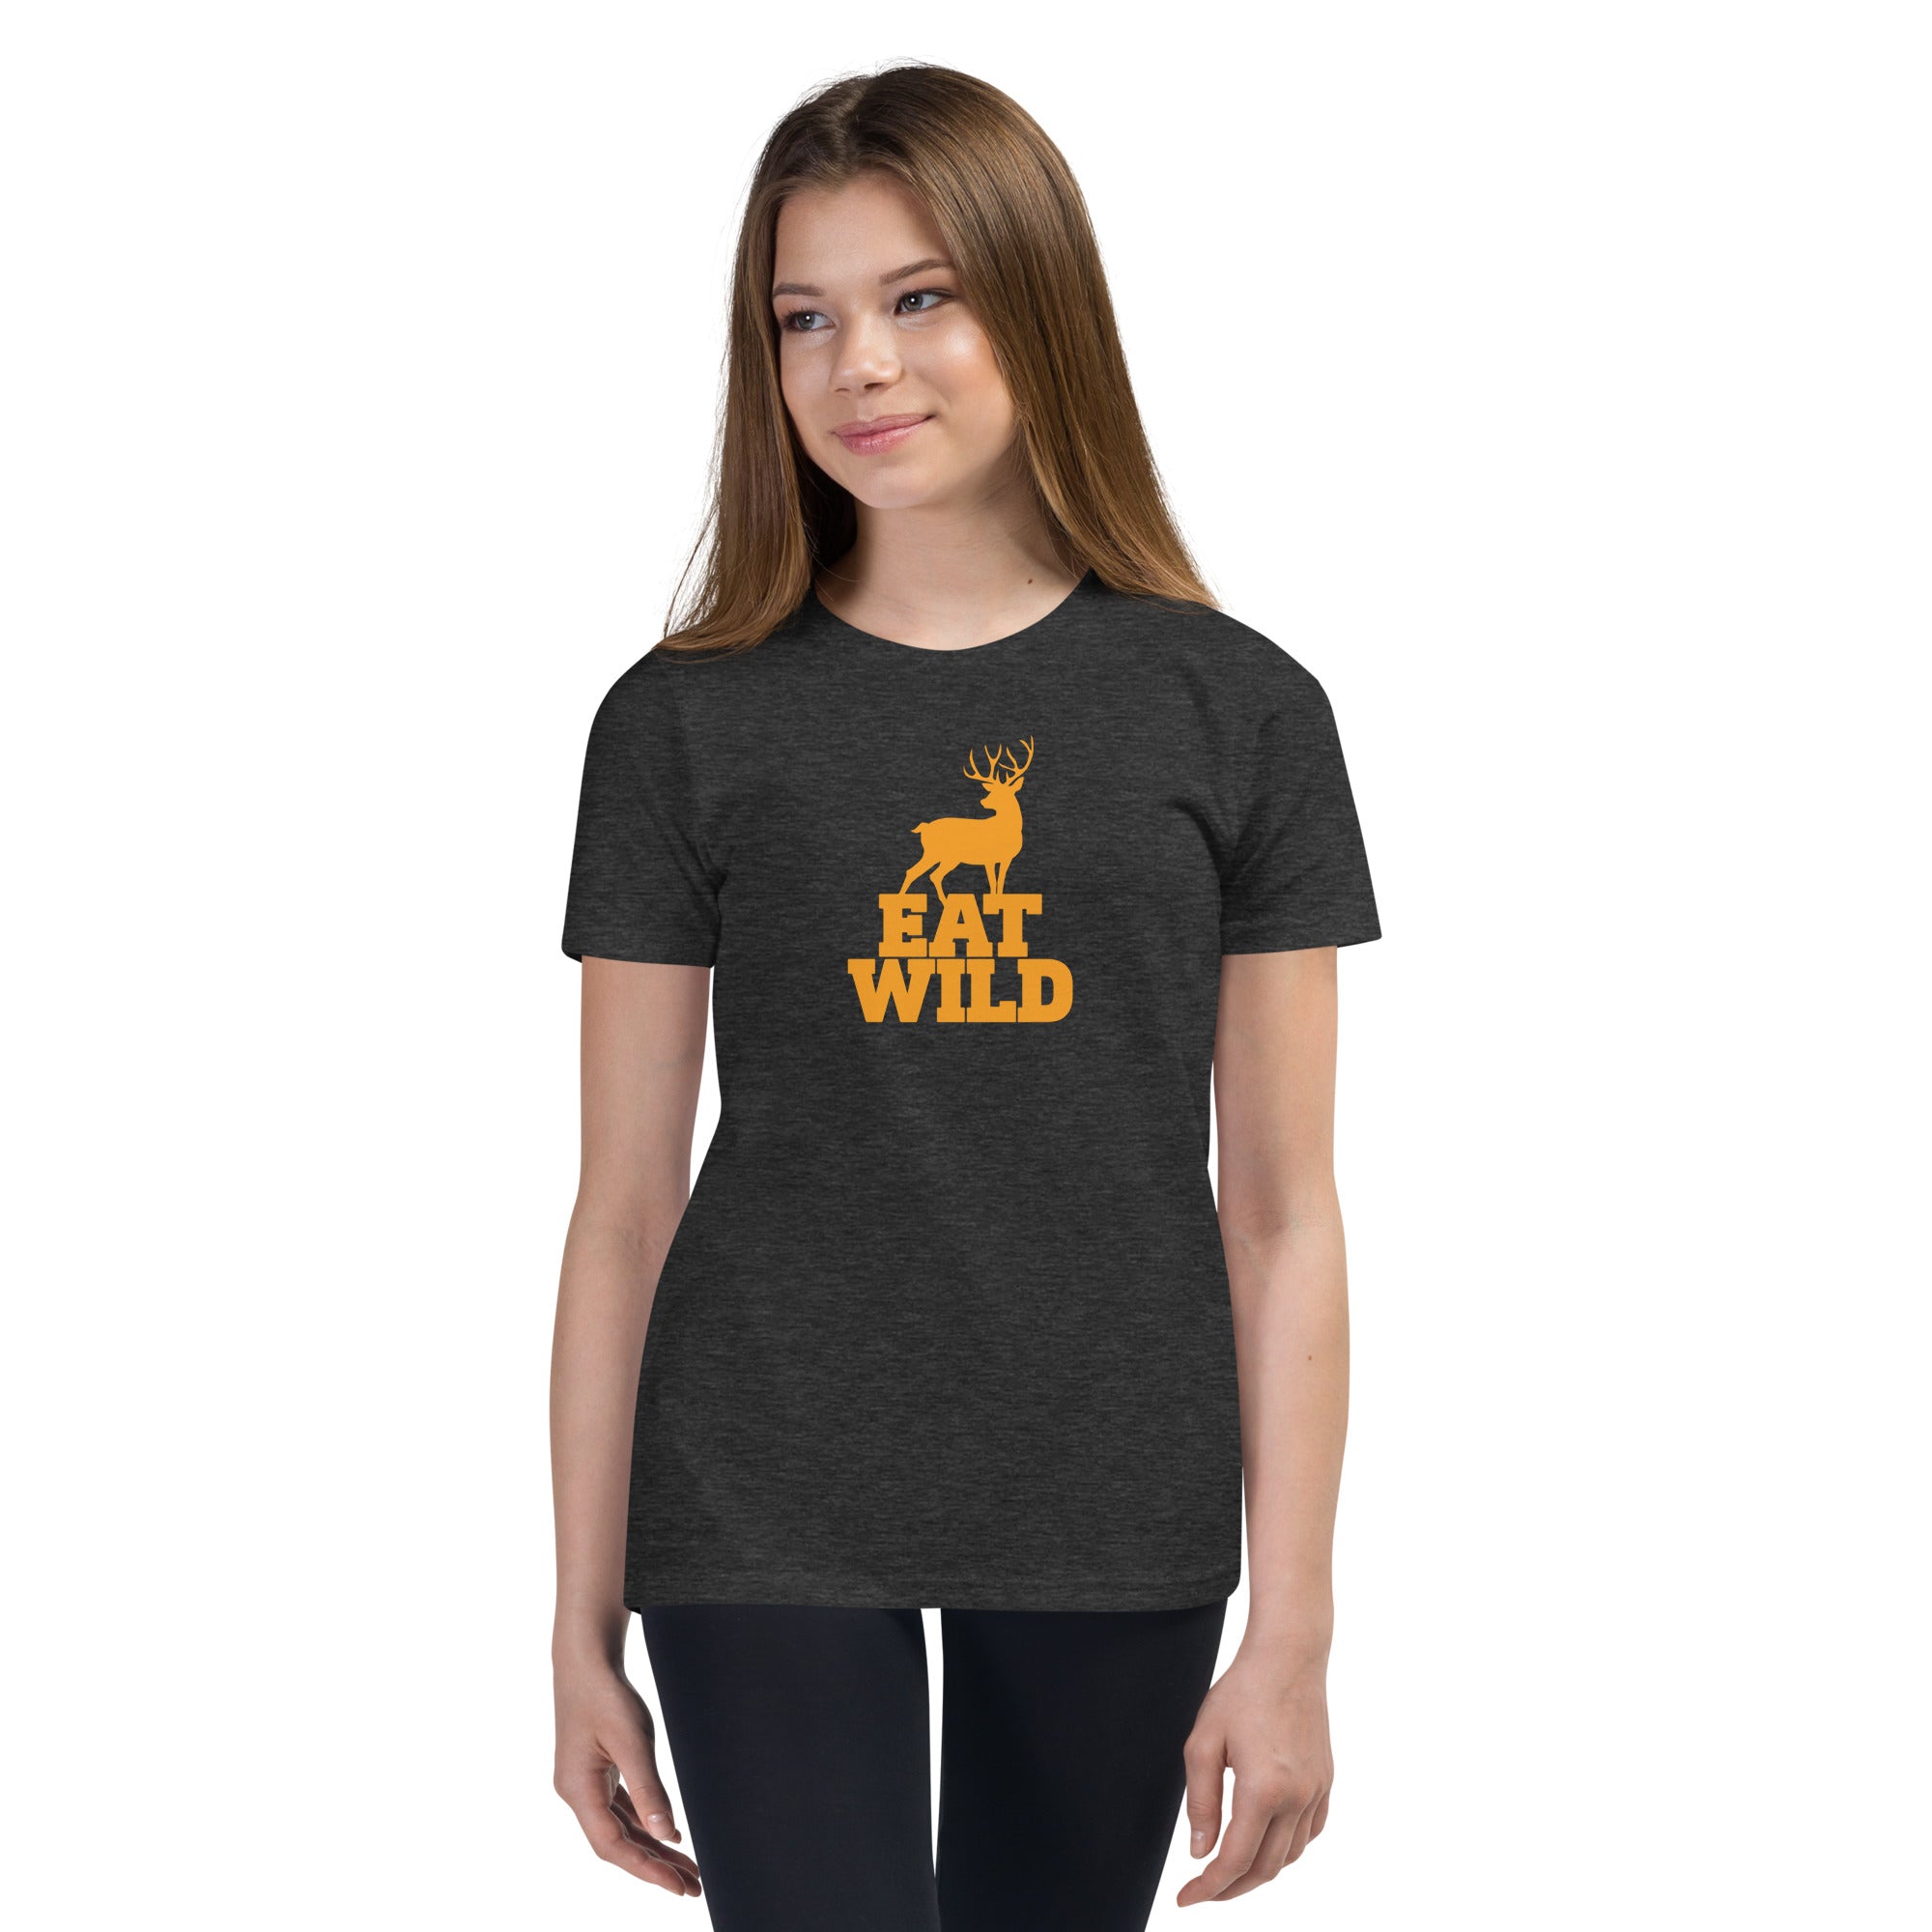 EatWild Youth T-Shirt